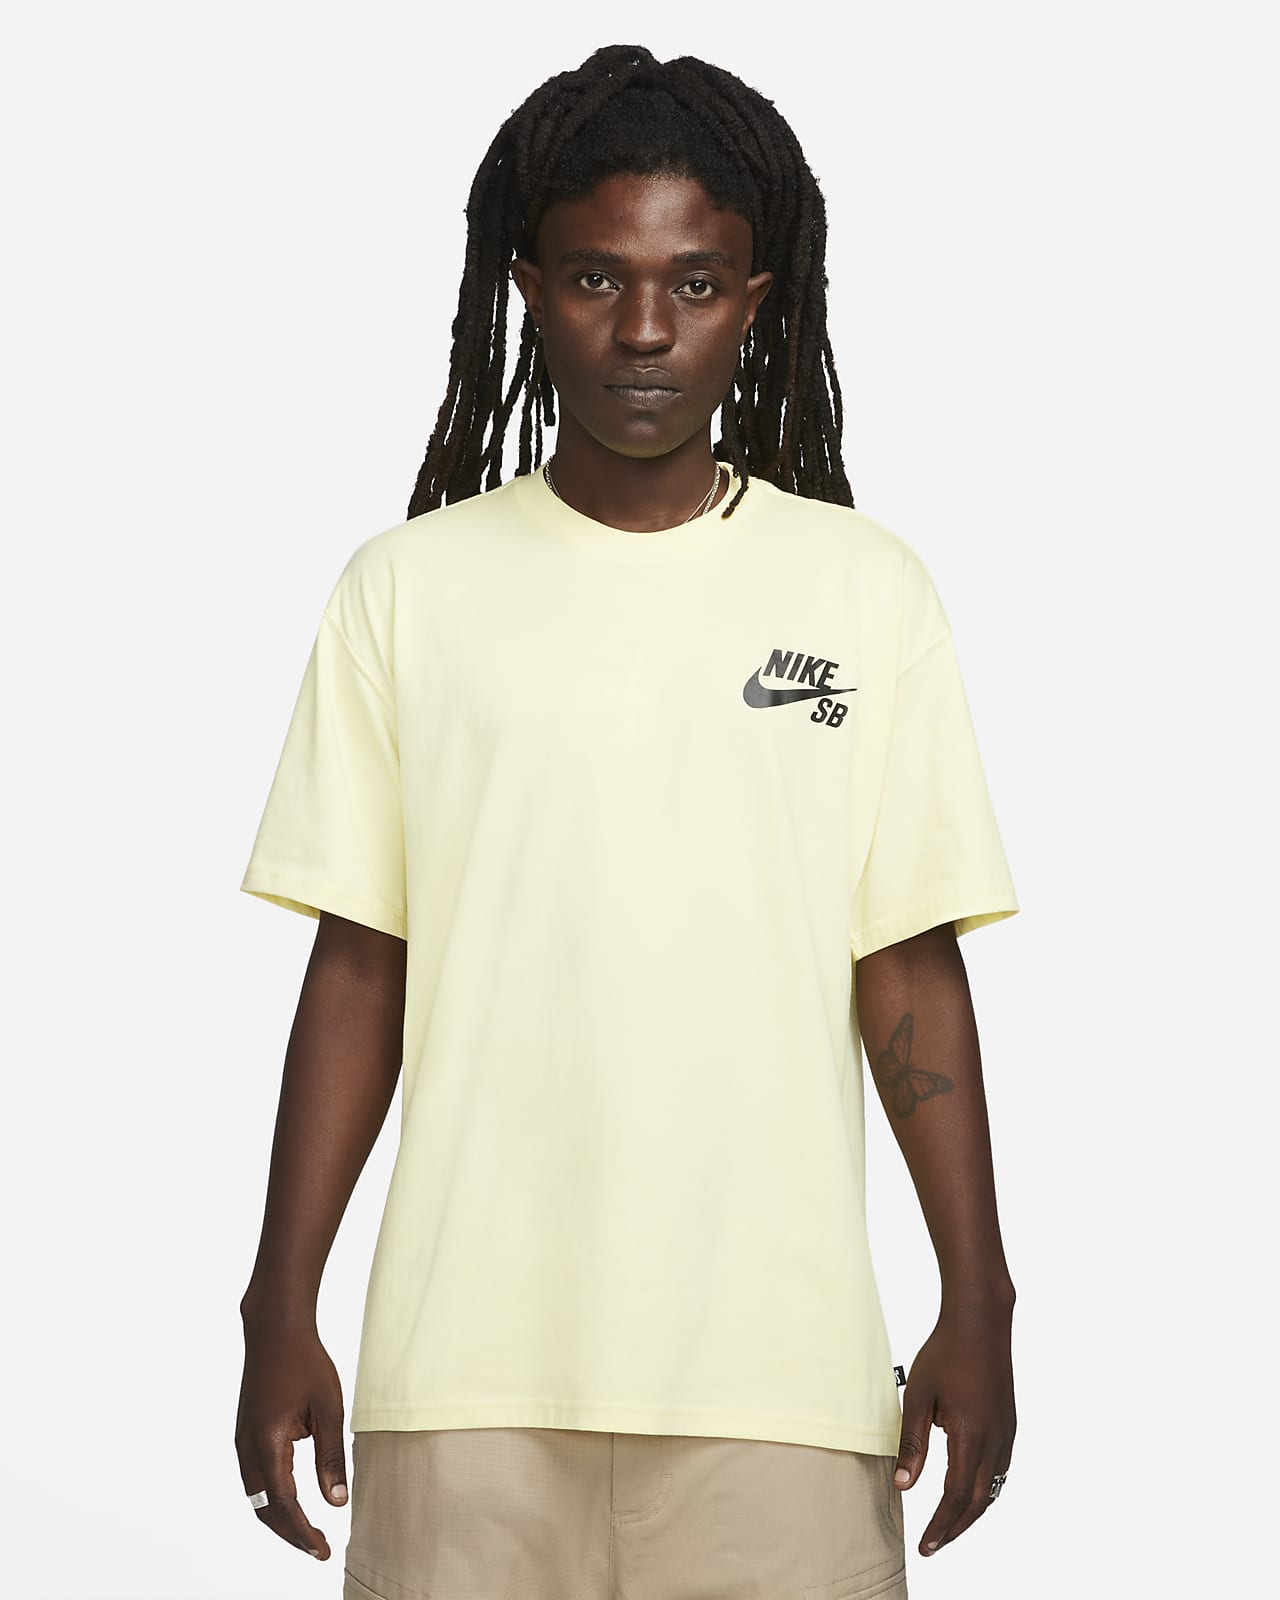 T-shirt da skateboard con logo Nike SB